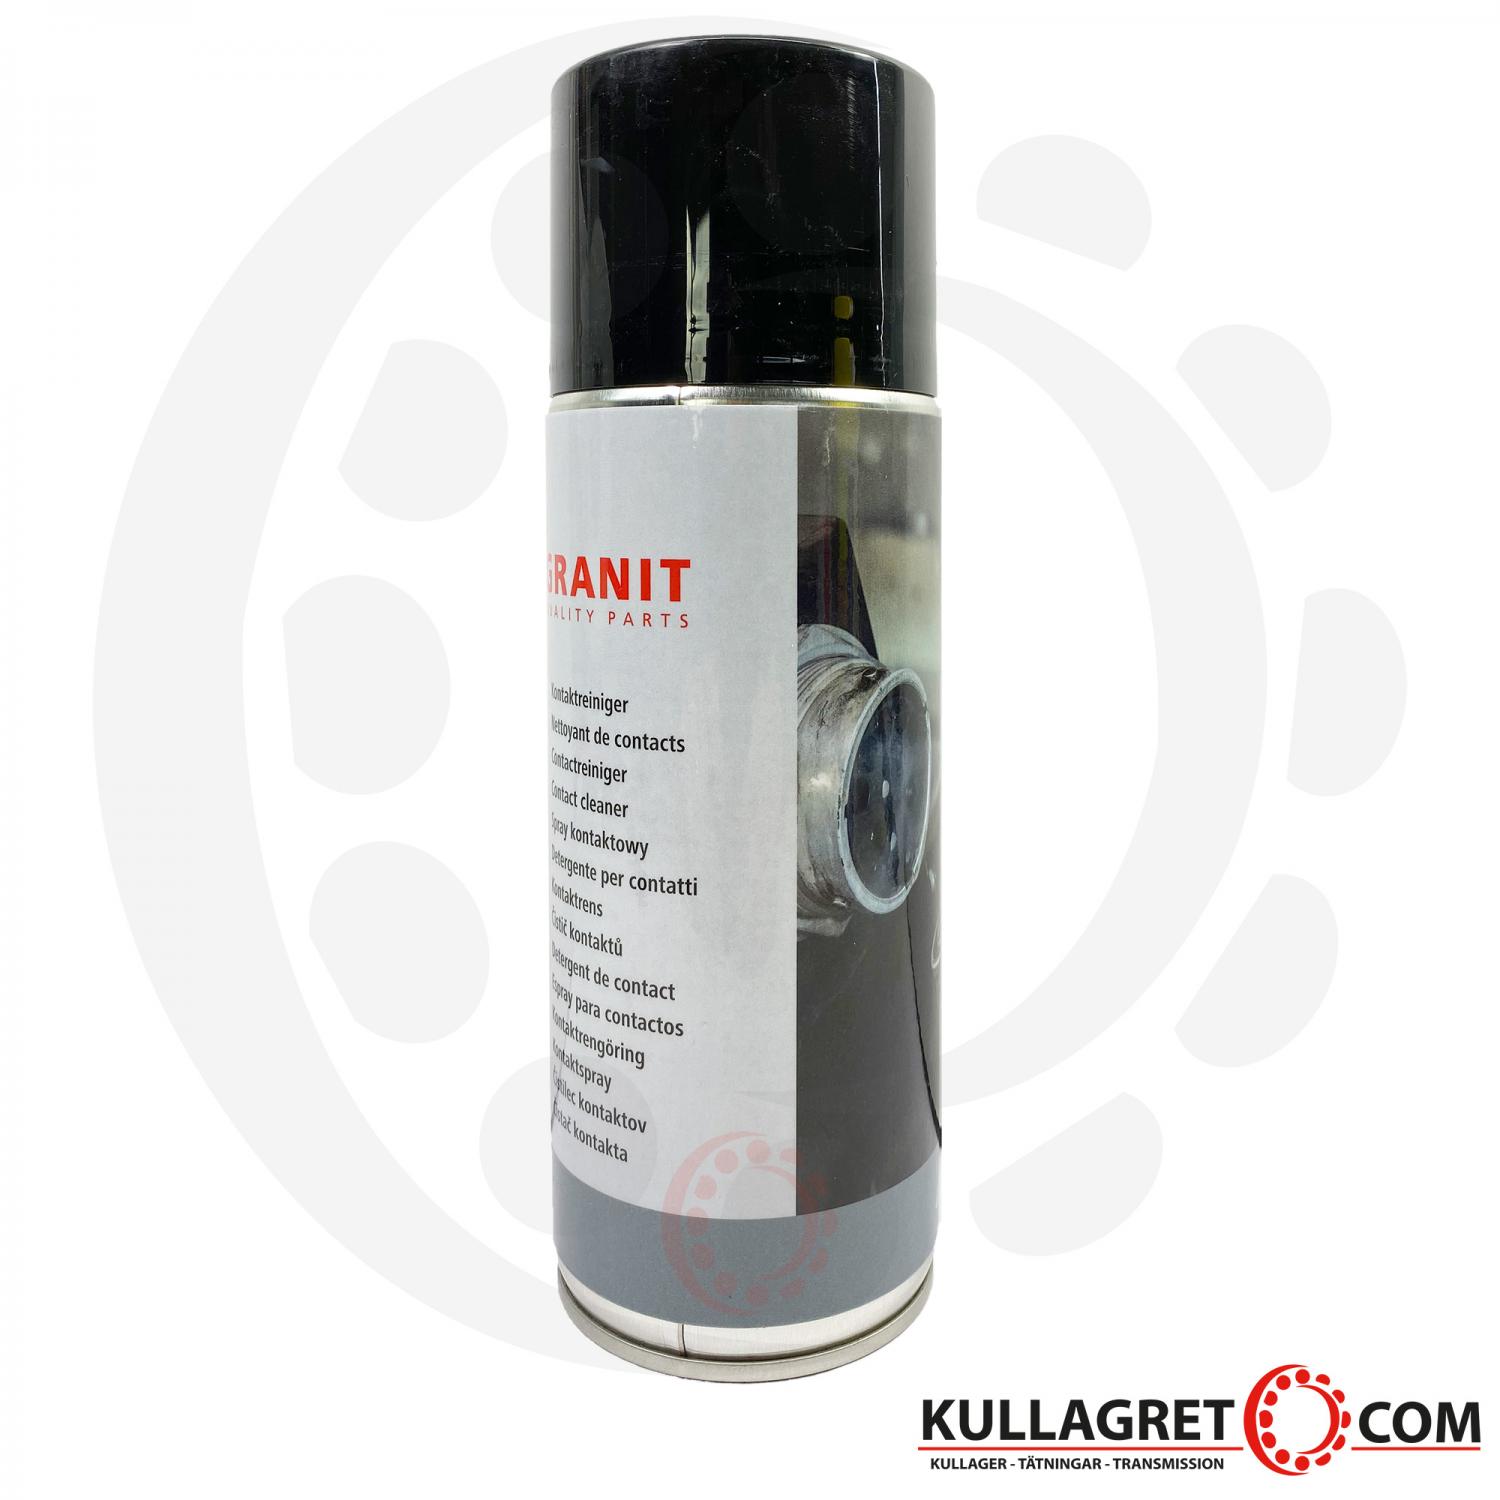 Granit Elektronikrengöring spray 400ml